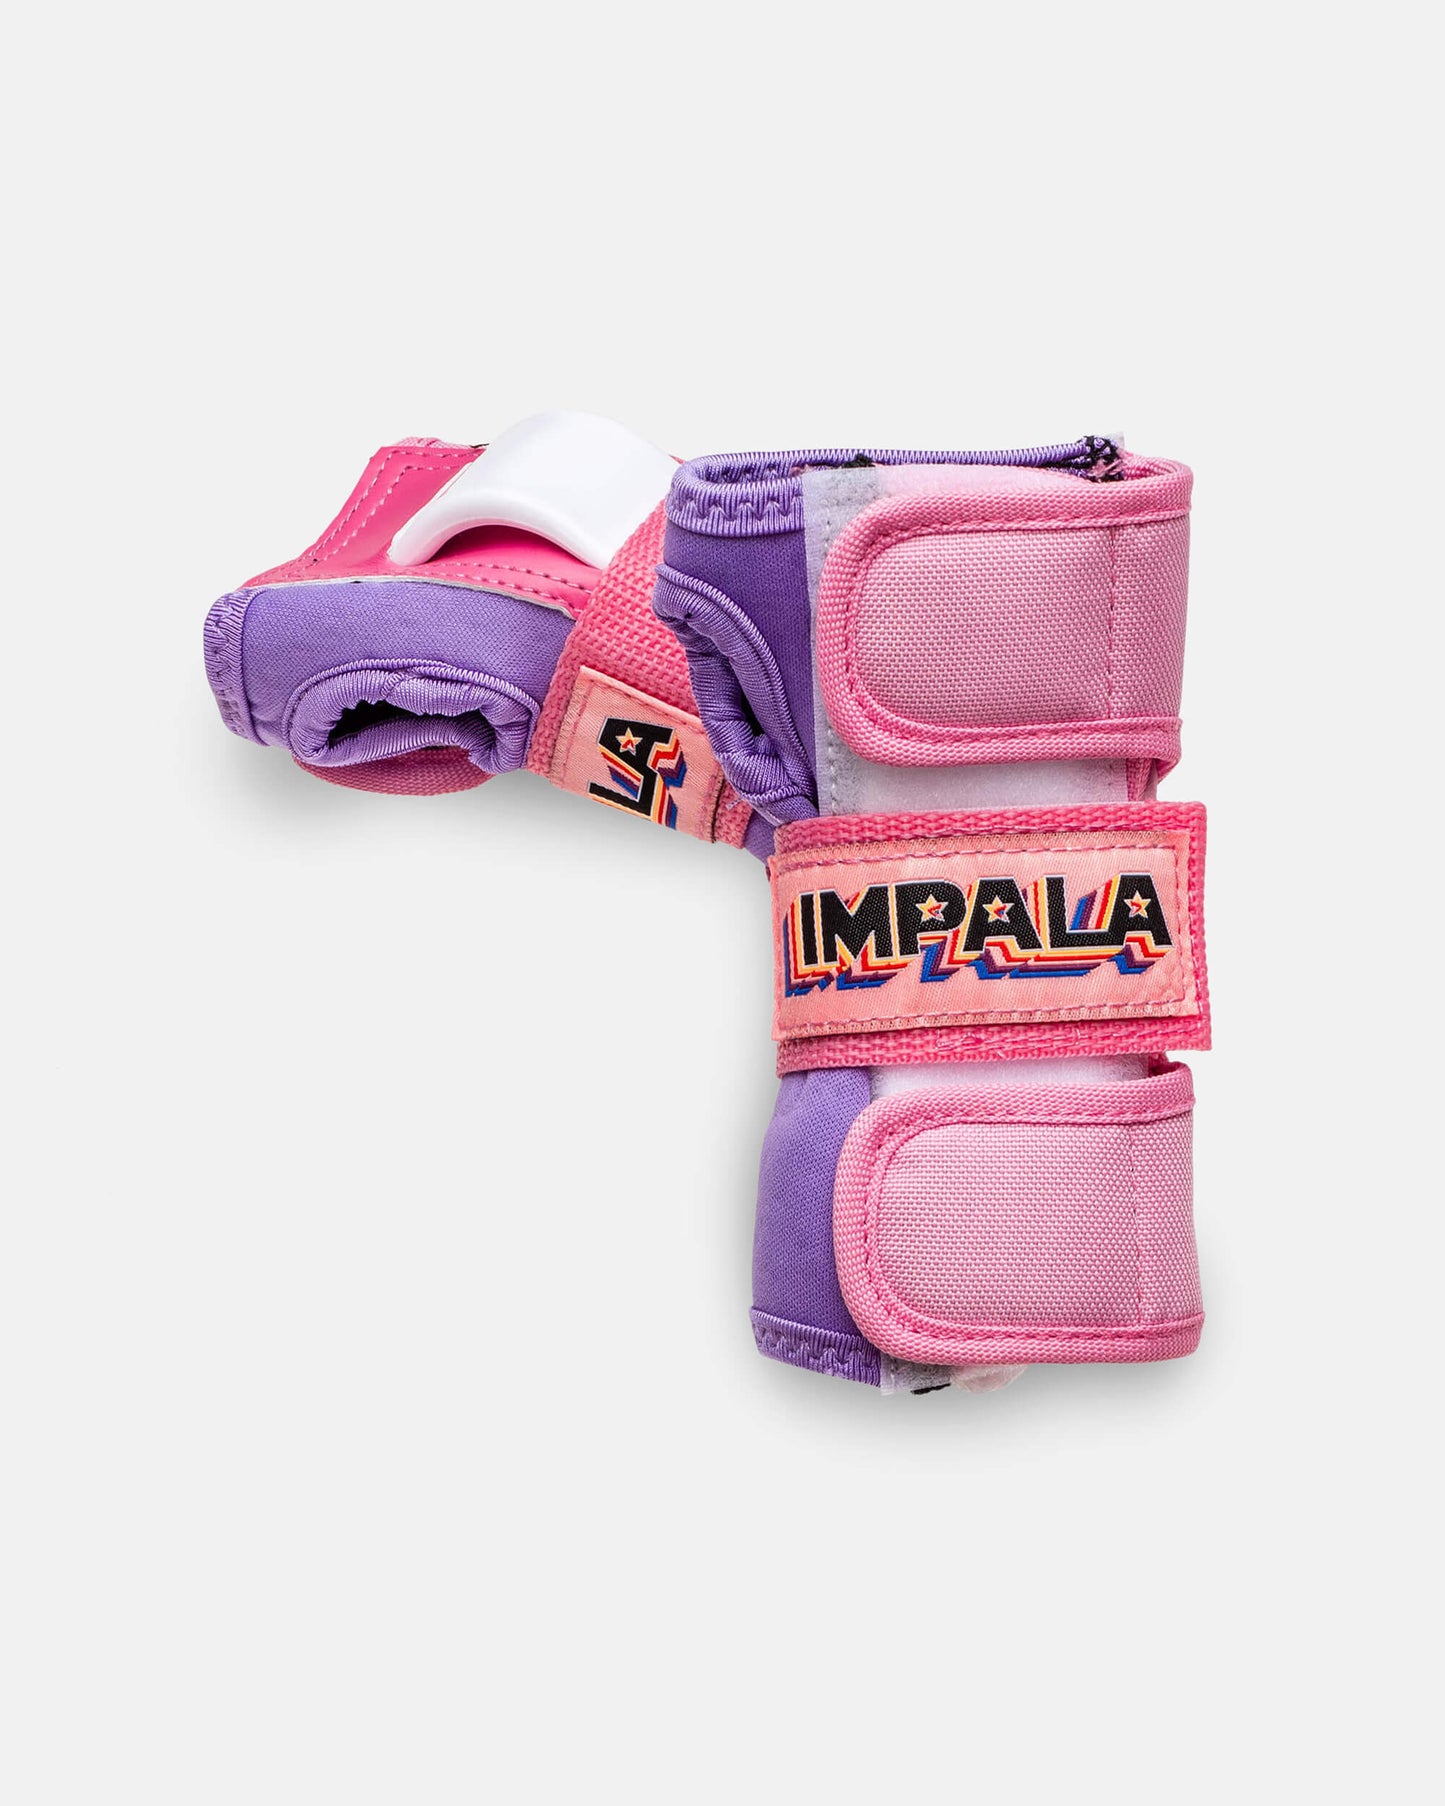 Impala Kids Confezione protettiva - Pink